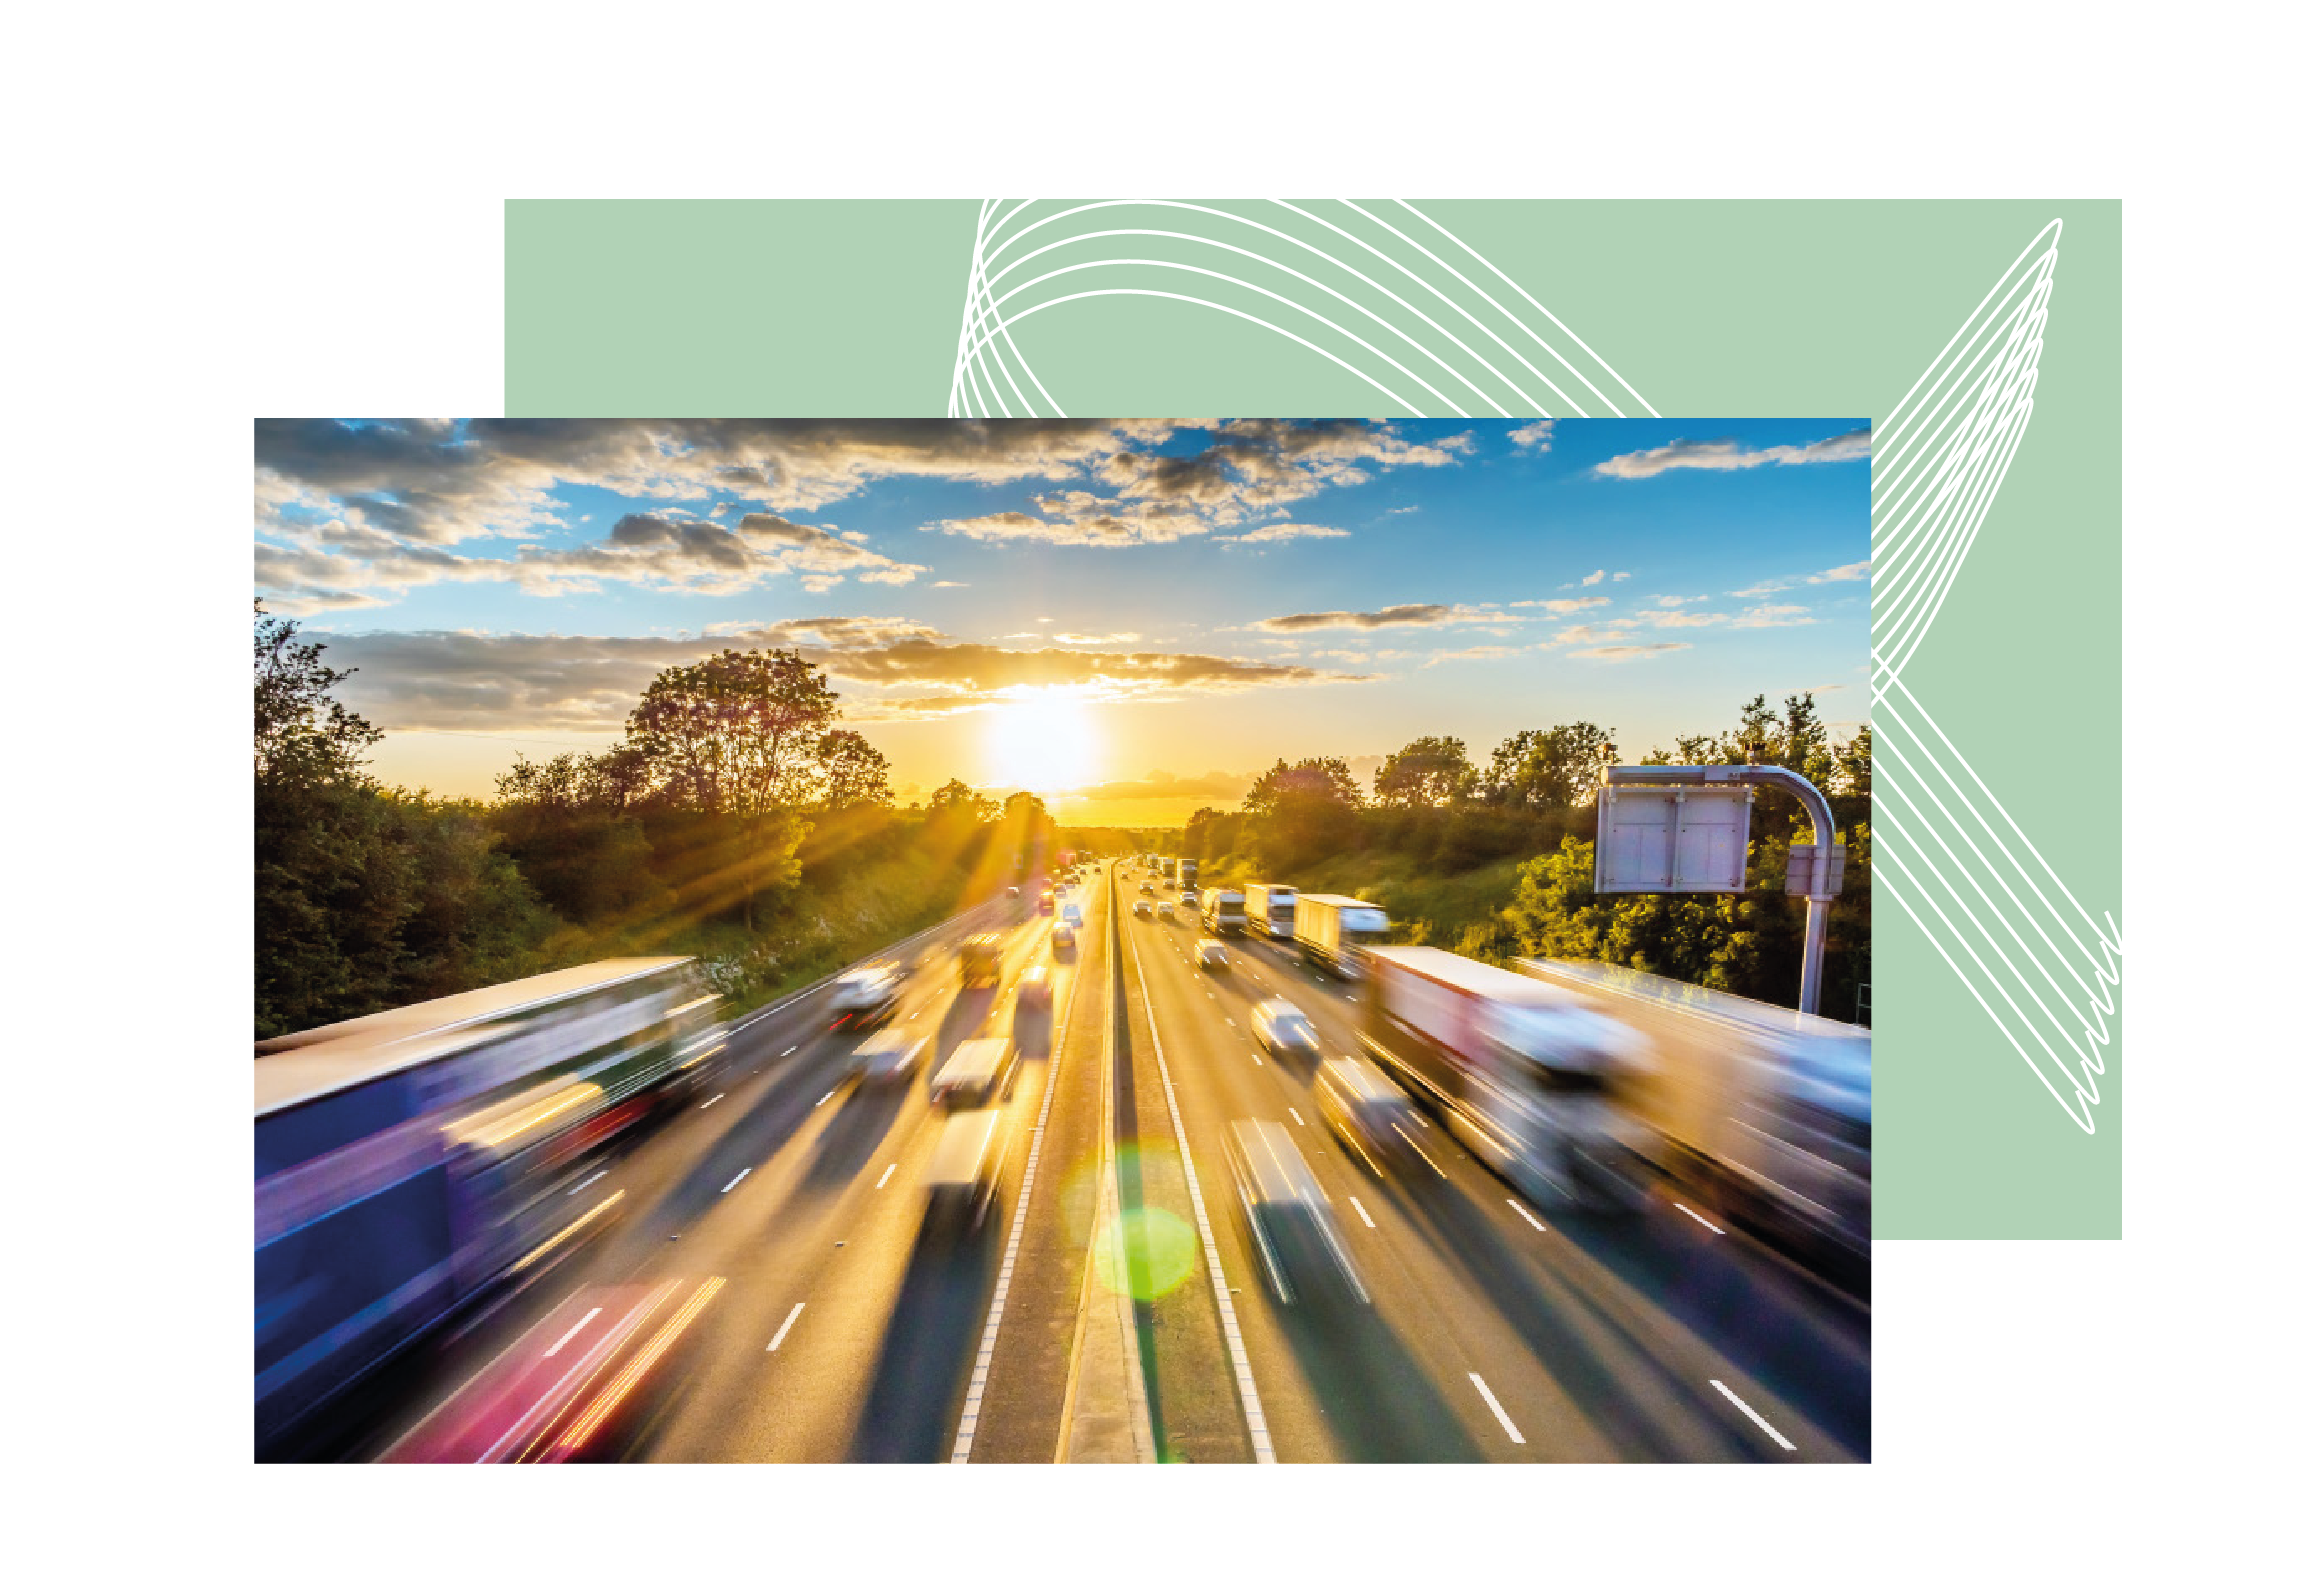 In ripresa il trasporto collettivo, frenano strade e autostrade, boom delle crociere: la mobilità nel terzo trimestre 2022